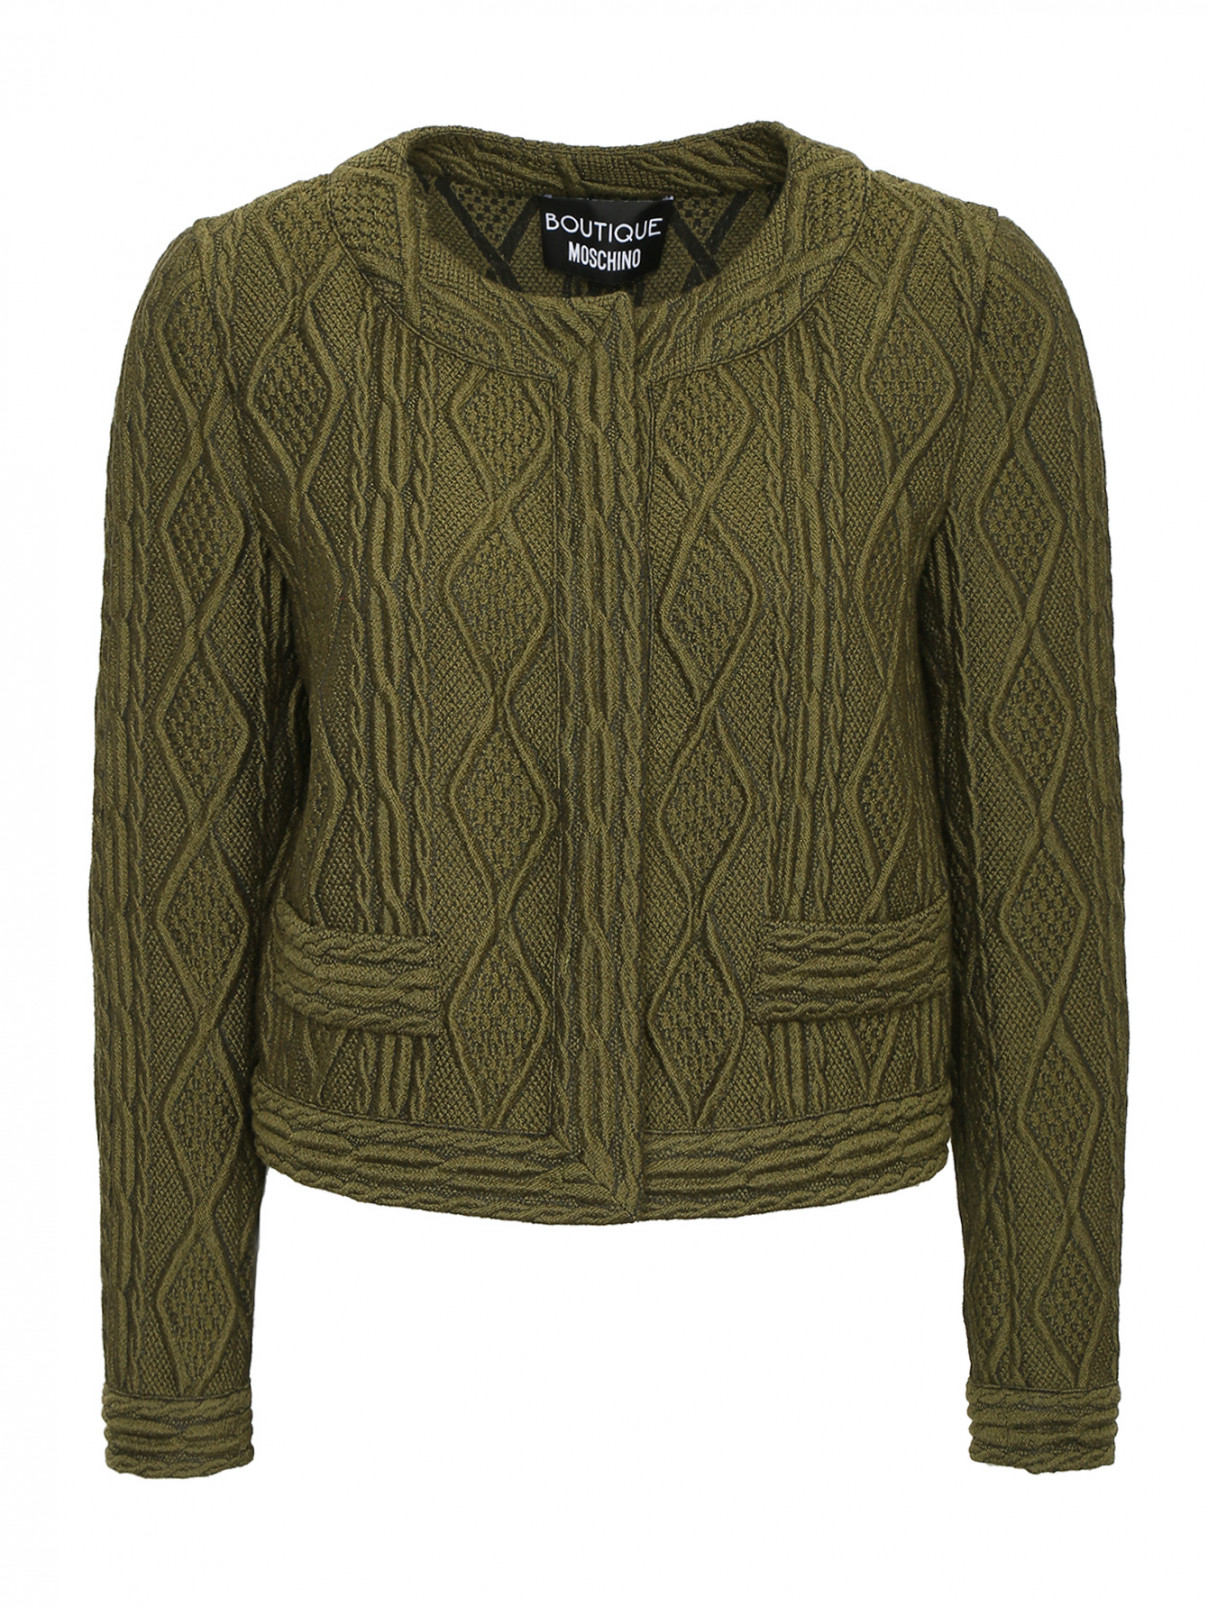 Жакет из фактурной ткани Moschino Boutique  –  Общий вид  – Цвет:  Зеленый